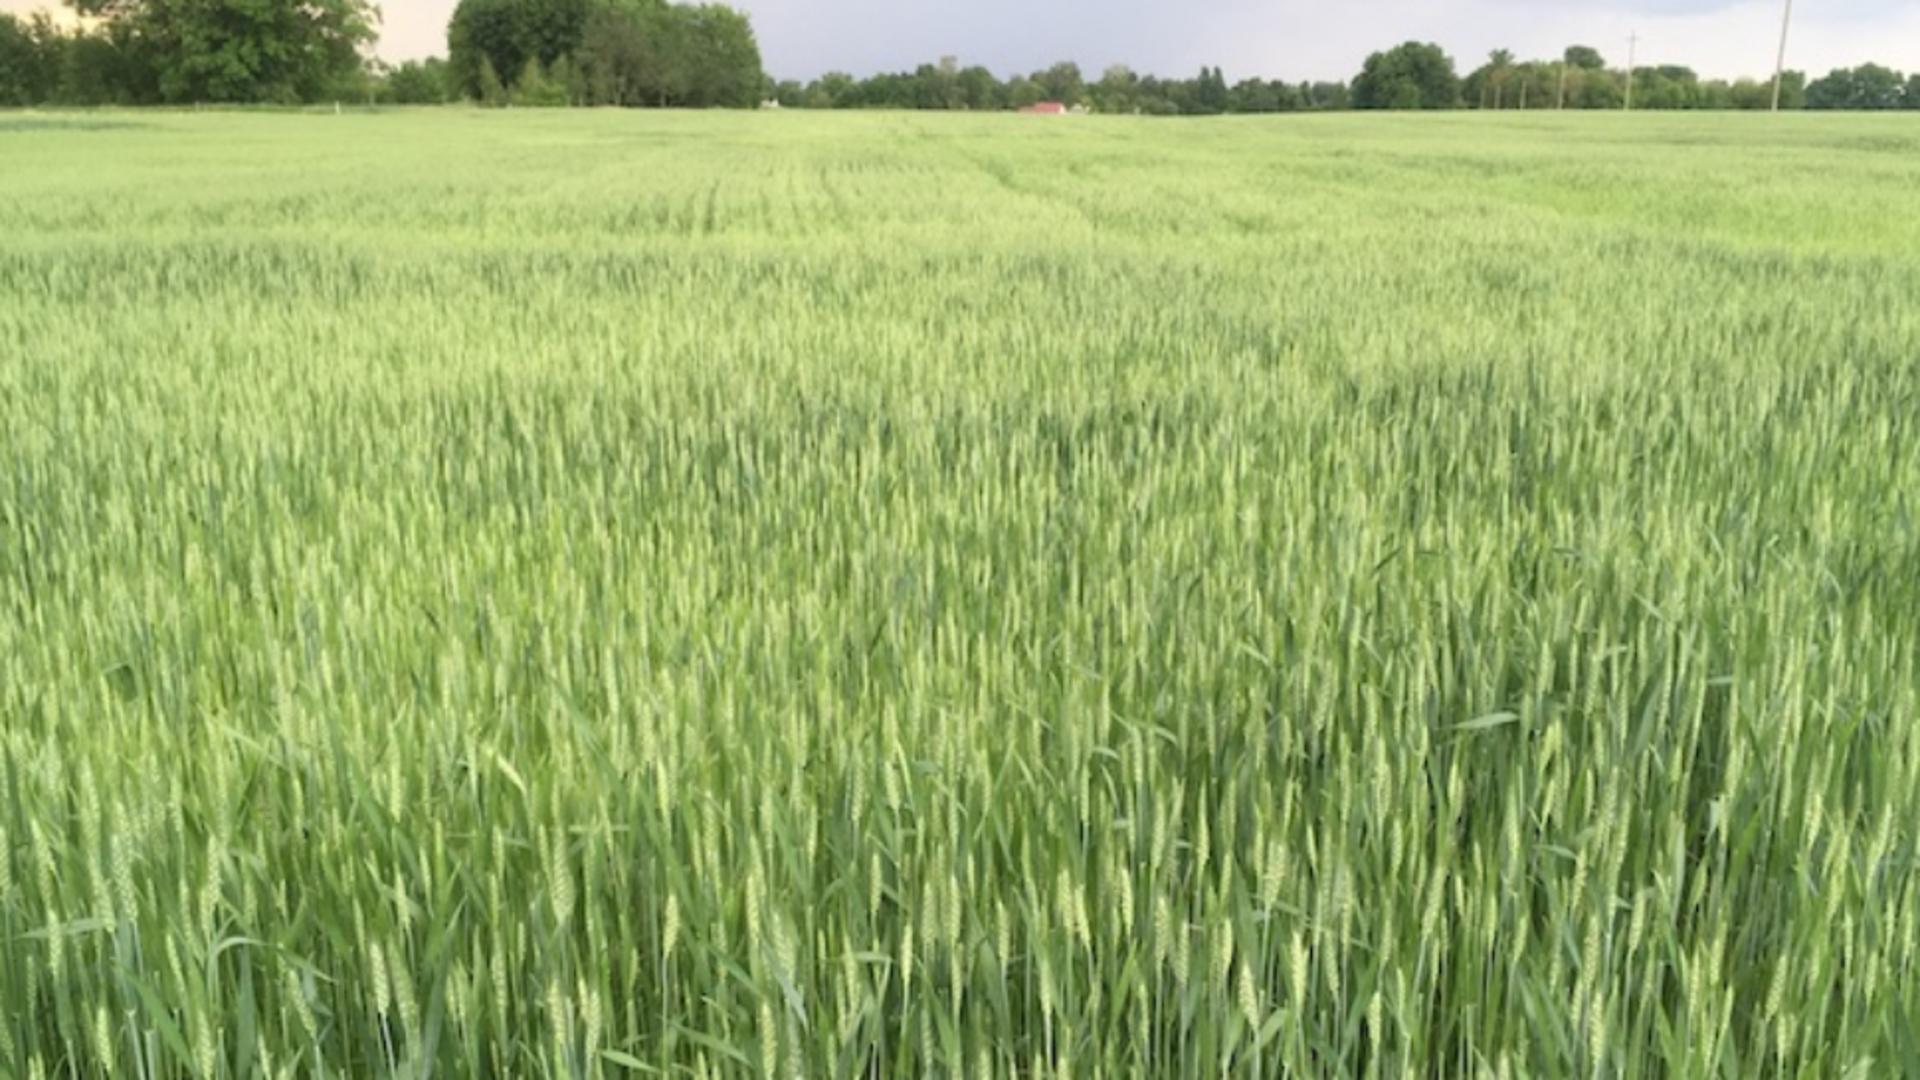 Criza alimentară globală se va agrava - Rusia controlează 22% din terenurile agricole din Ucraina, după 4 luni de război - HARTA